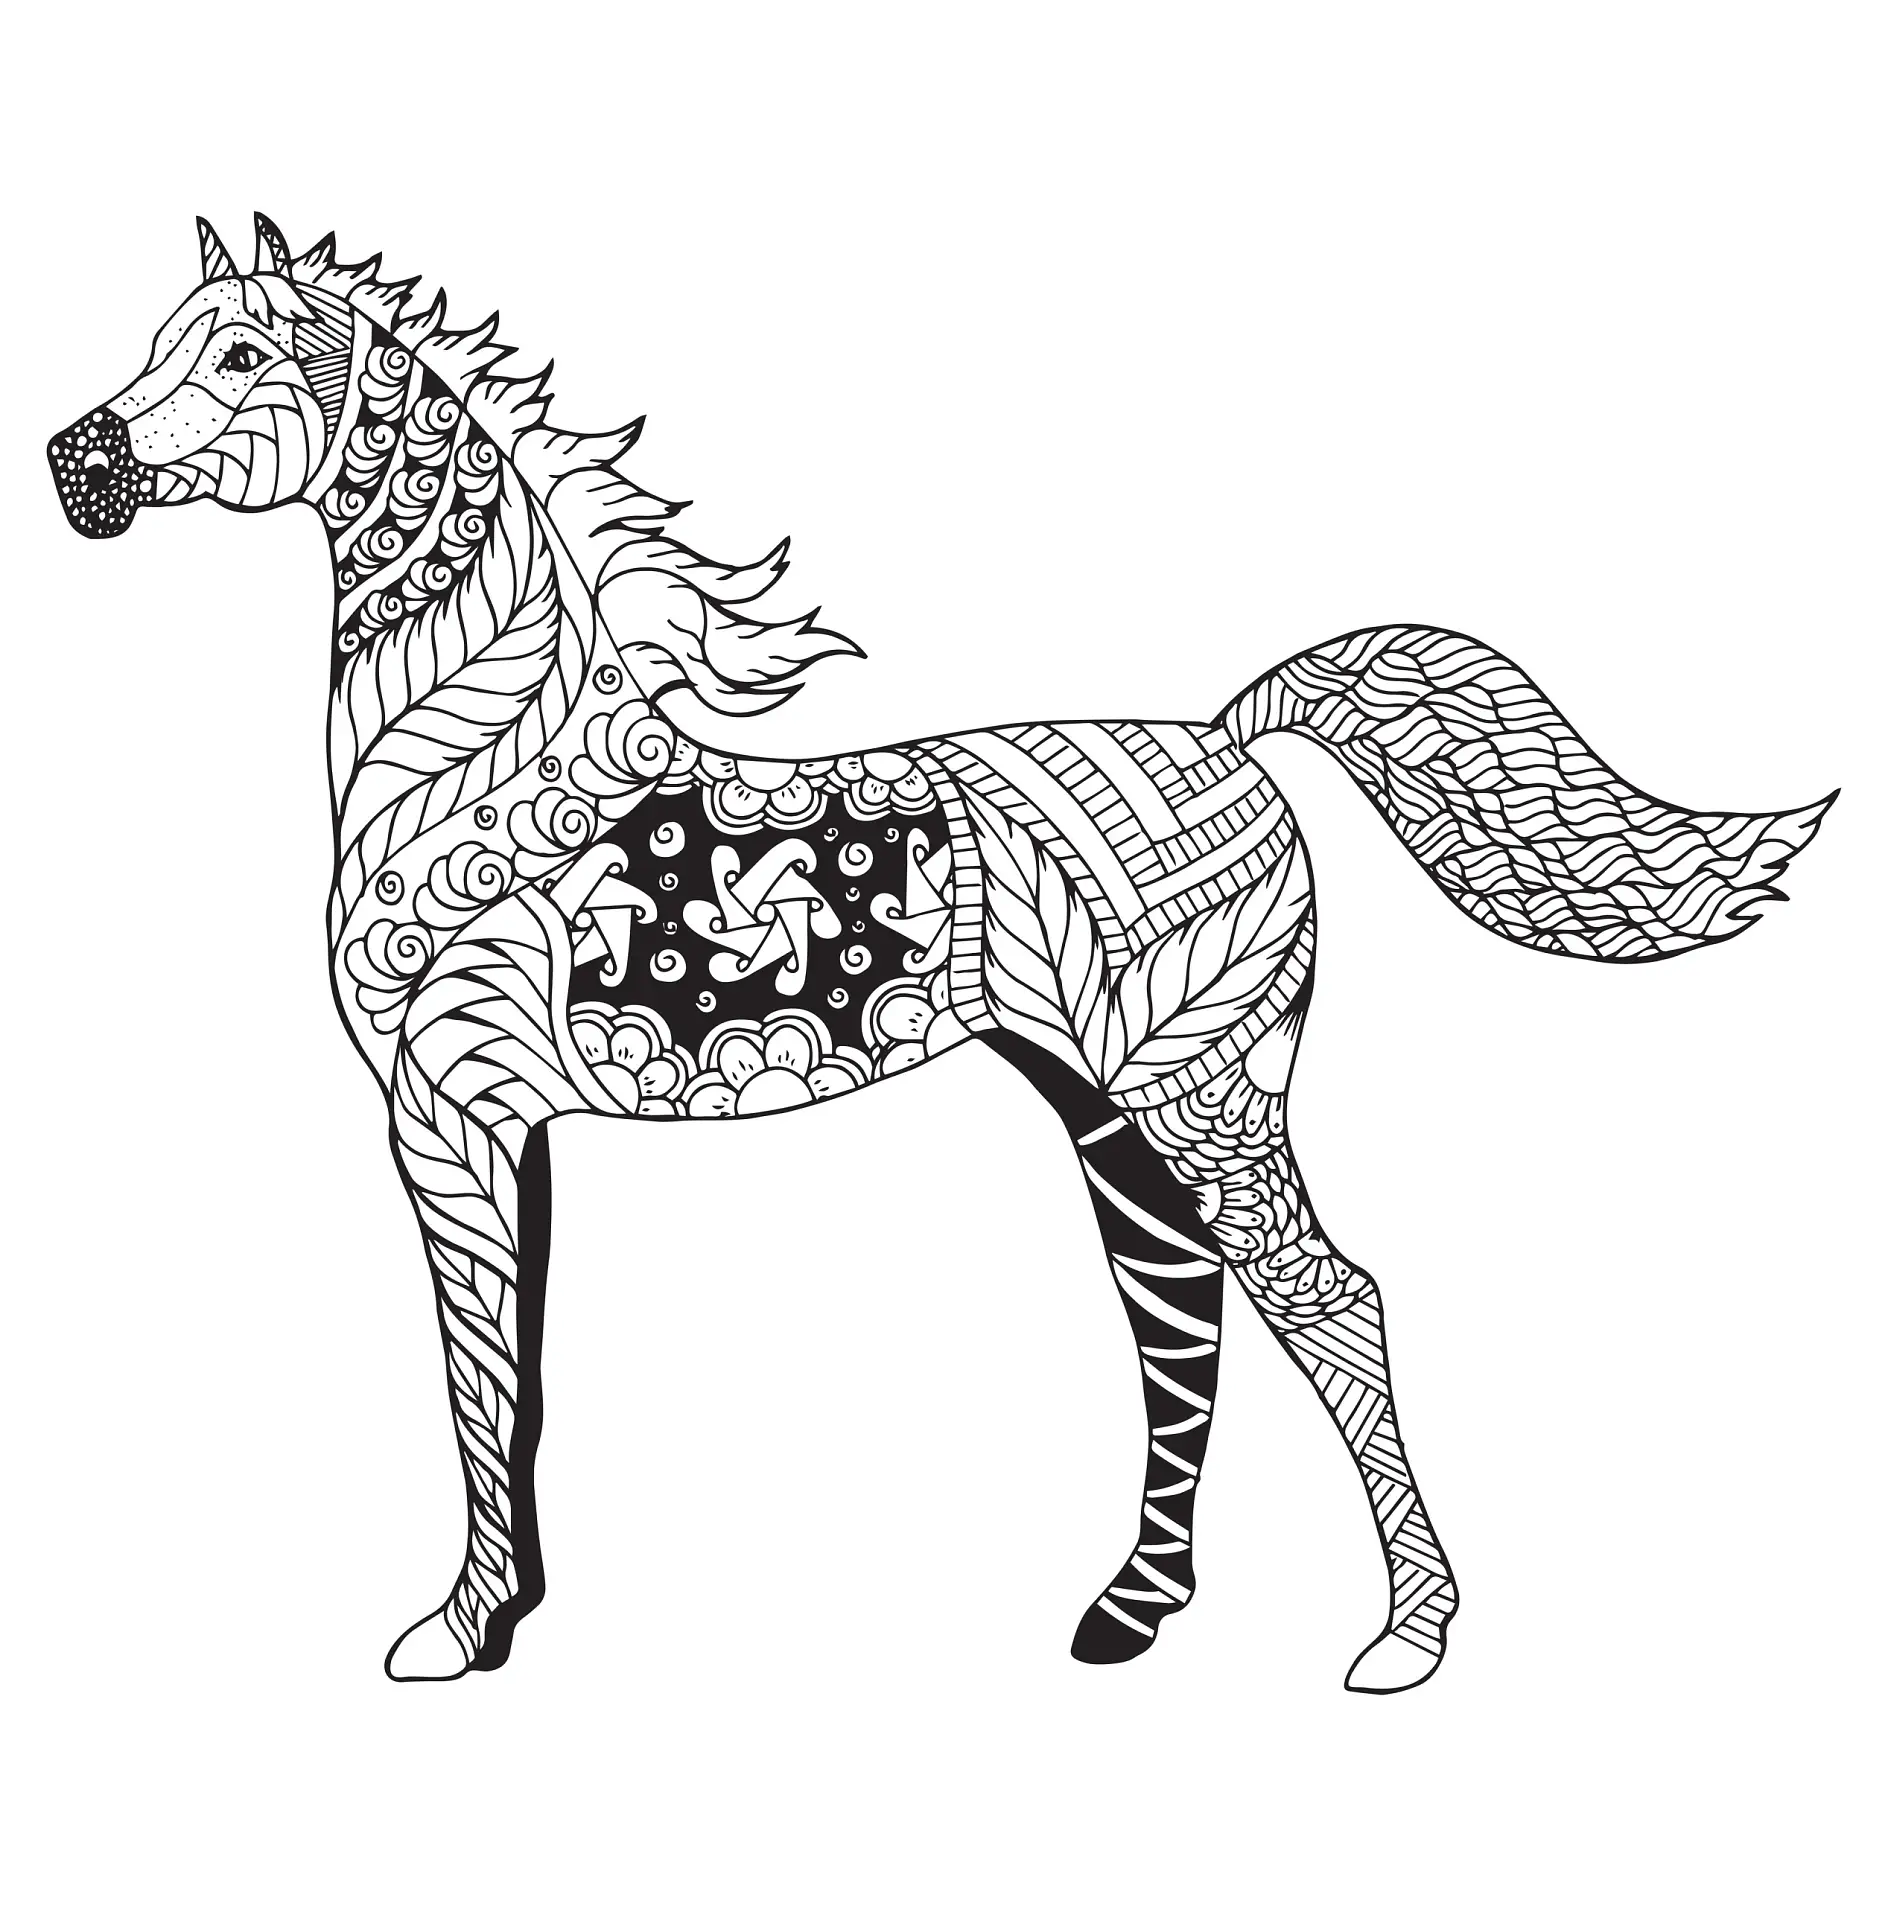 Ausmalbild Mandala mit Pferd und verschiedenen abstrakten Mustern